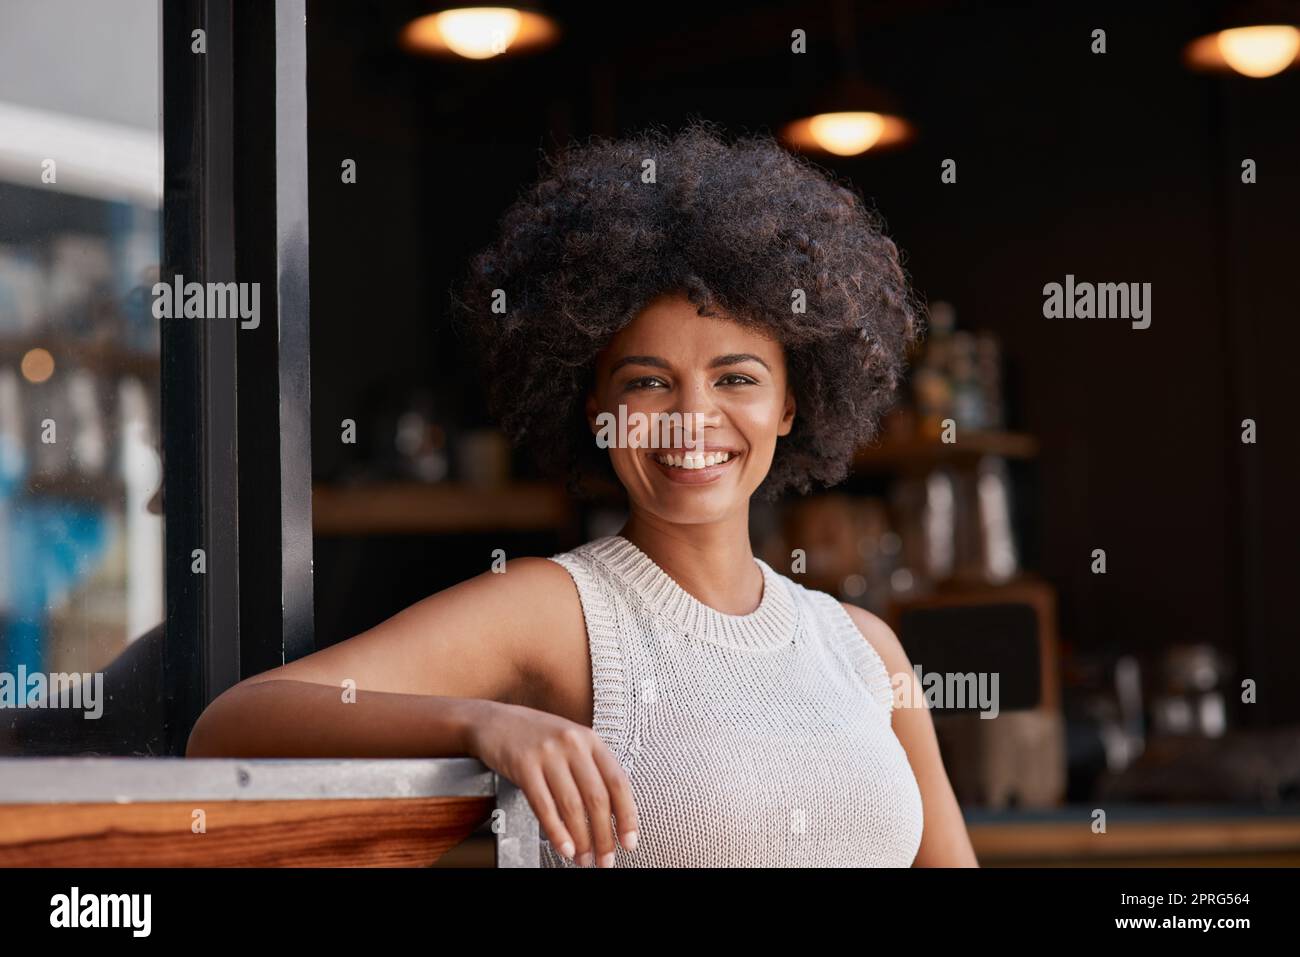 Es gibt einen Unternehmer in uns allen. Porträt einer selbstbewussten jungen Geschäftsbesitzerin, die vor der Tür ihres Cafés posiert. Stockfoto